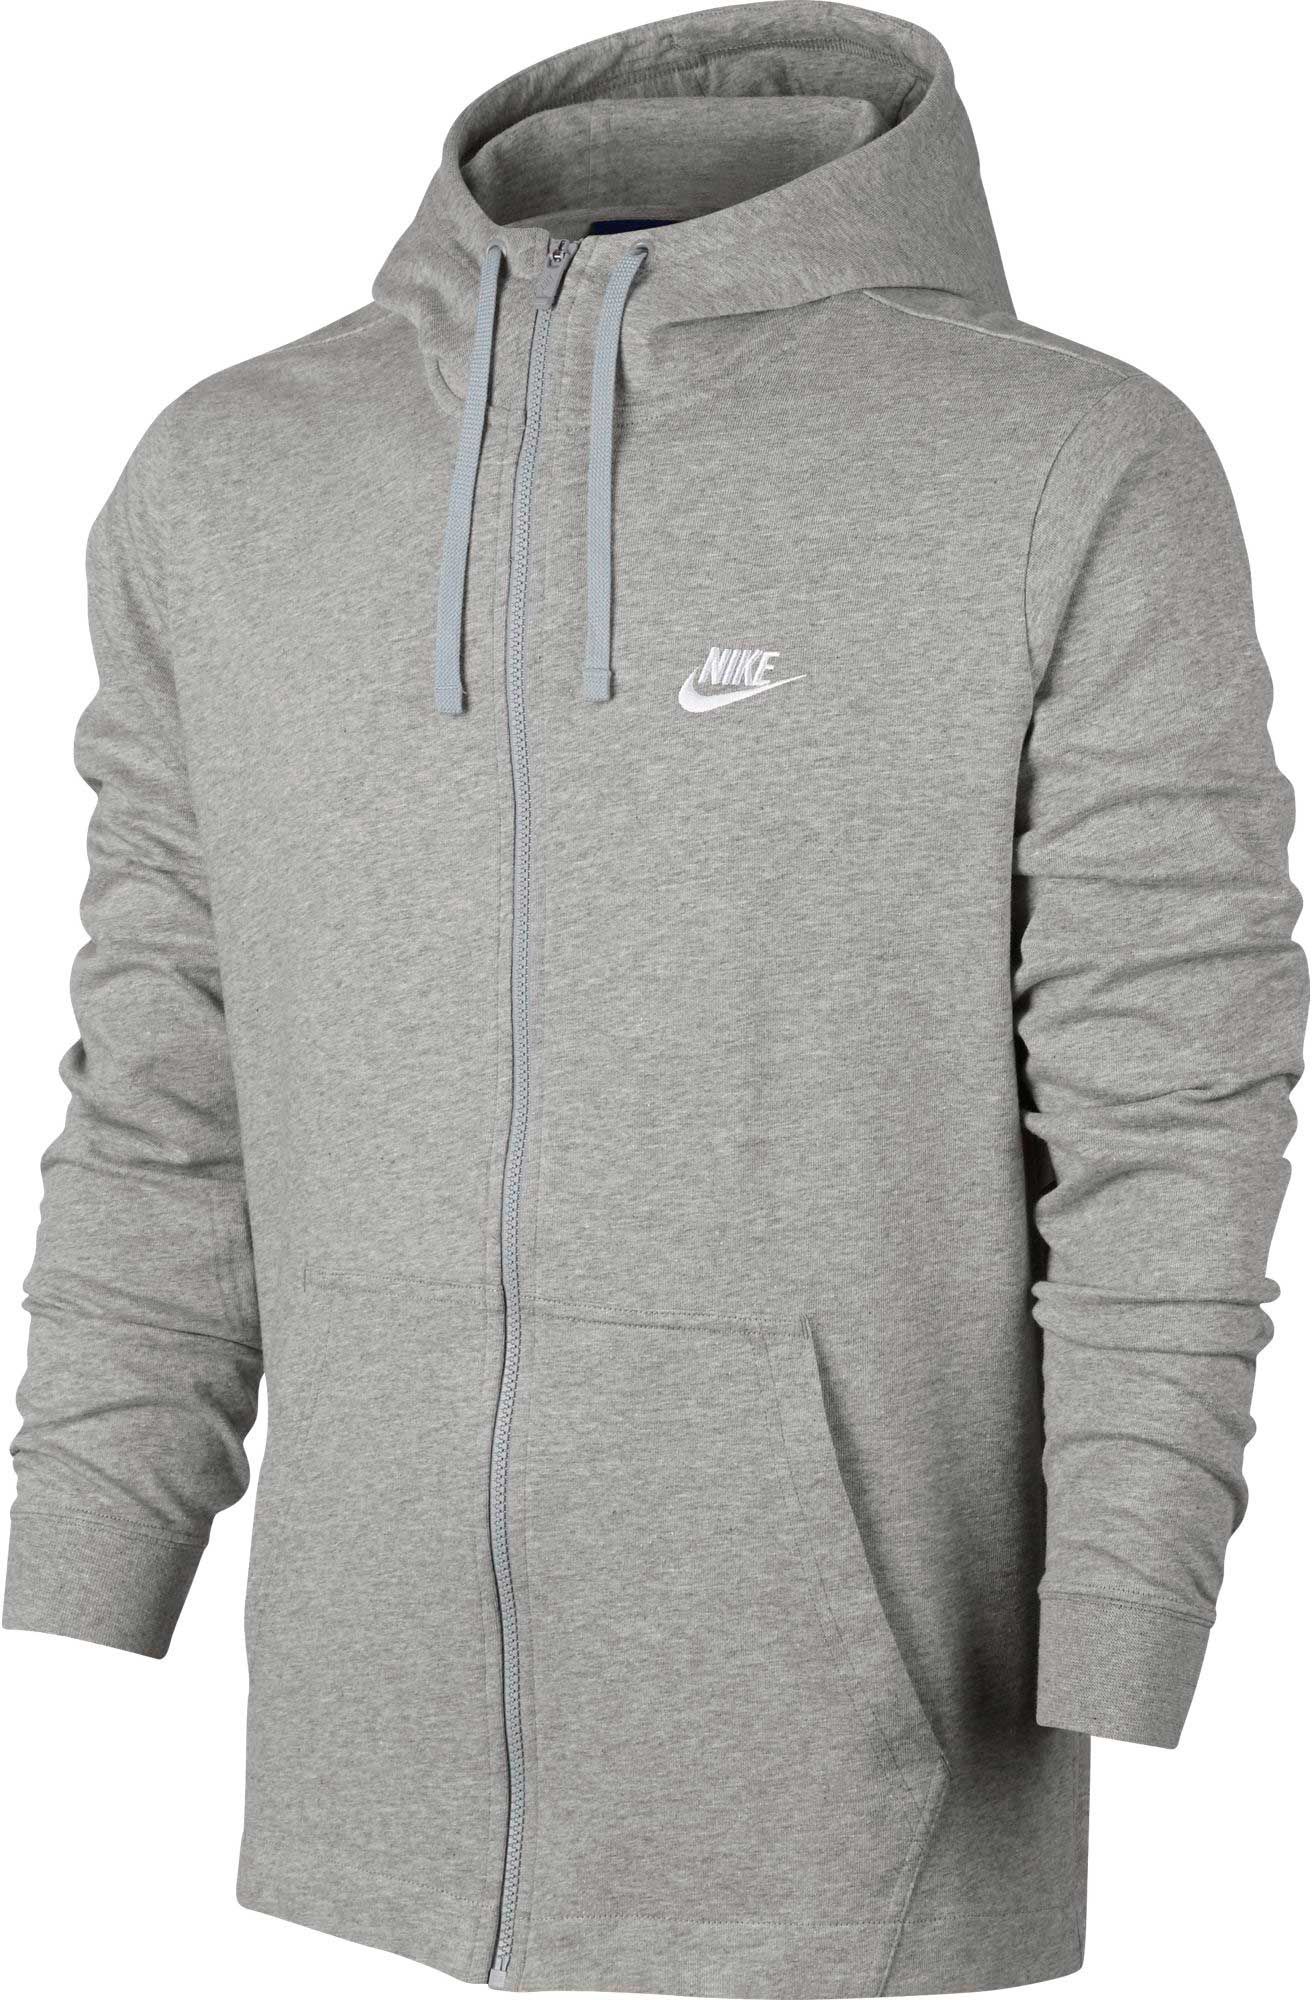 grey nike zip up hoodie mens